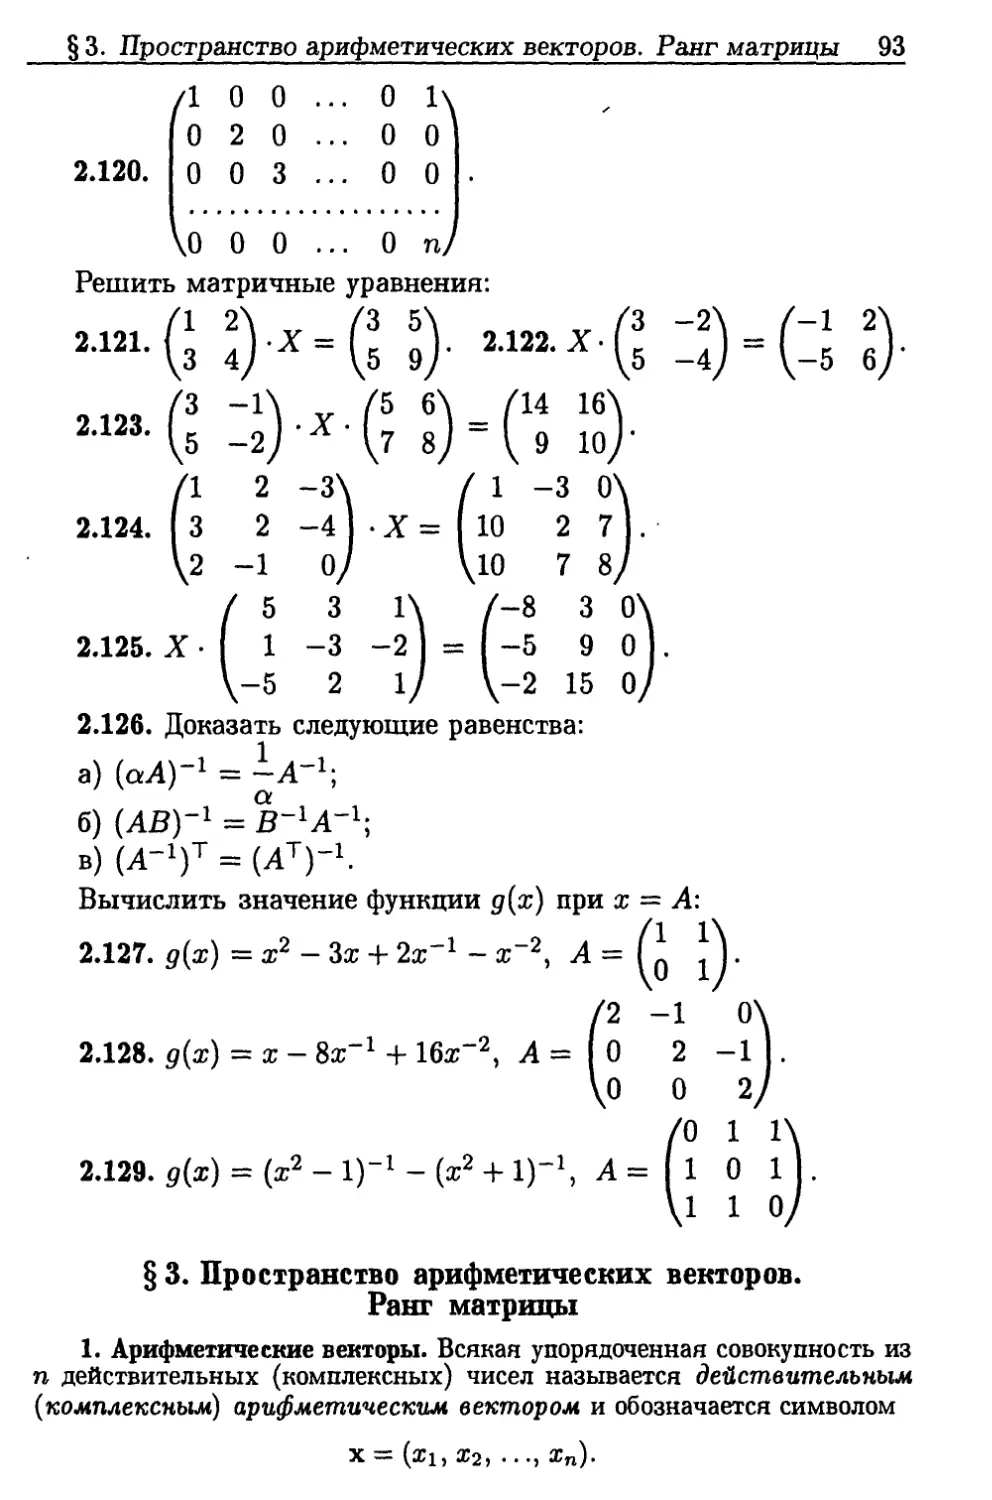 §3. Пространство арифметических векторов. Ранг матрицы